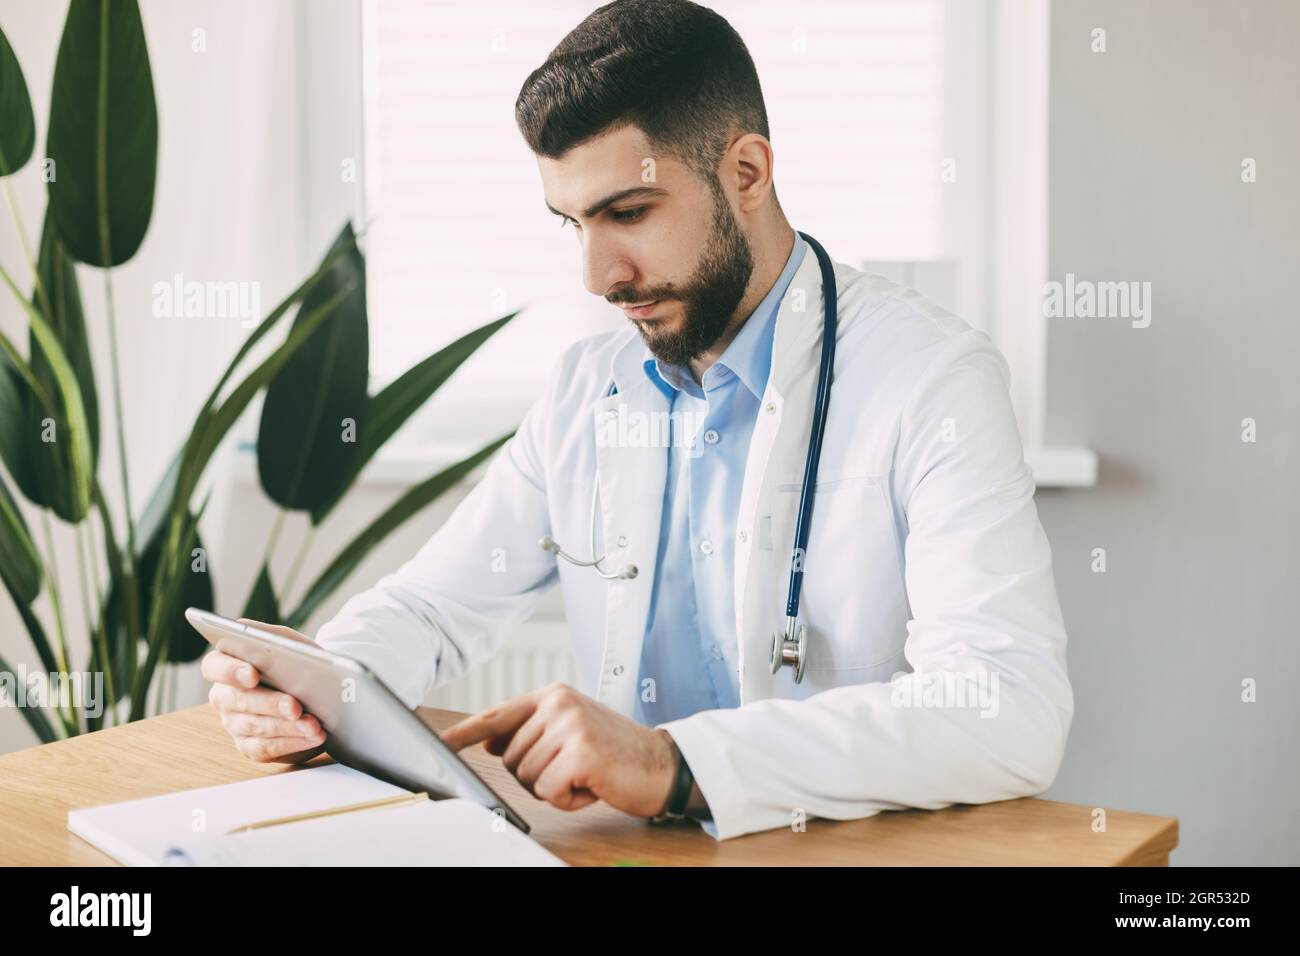 Un Doctor Masculino de Apariencia Oriental está Concentratedly trabajando en una Tableta, sentado en una Mesa Foto de stock